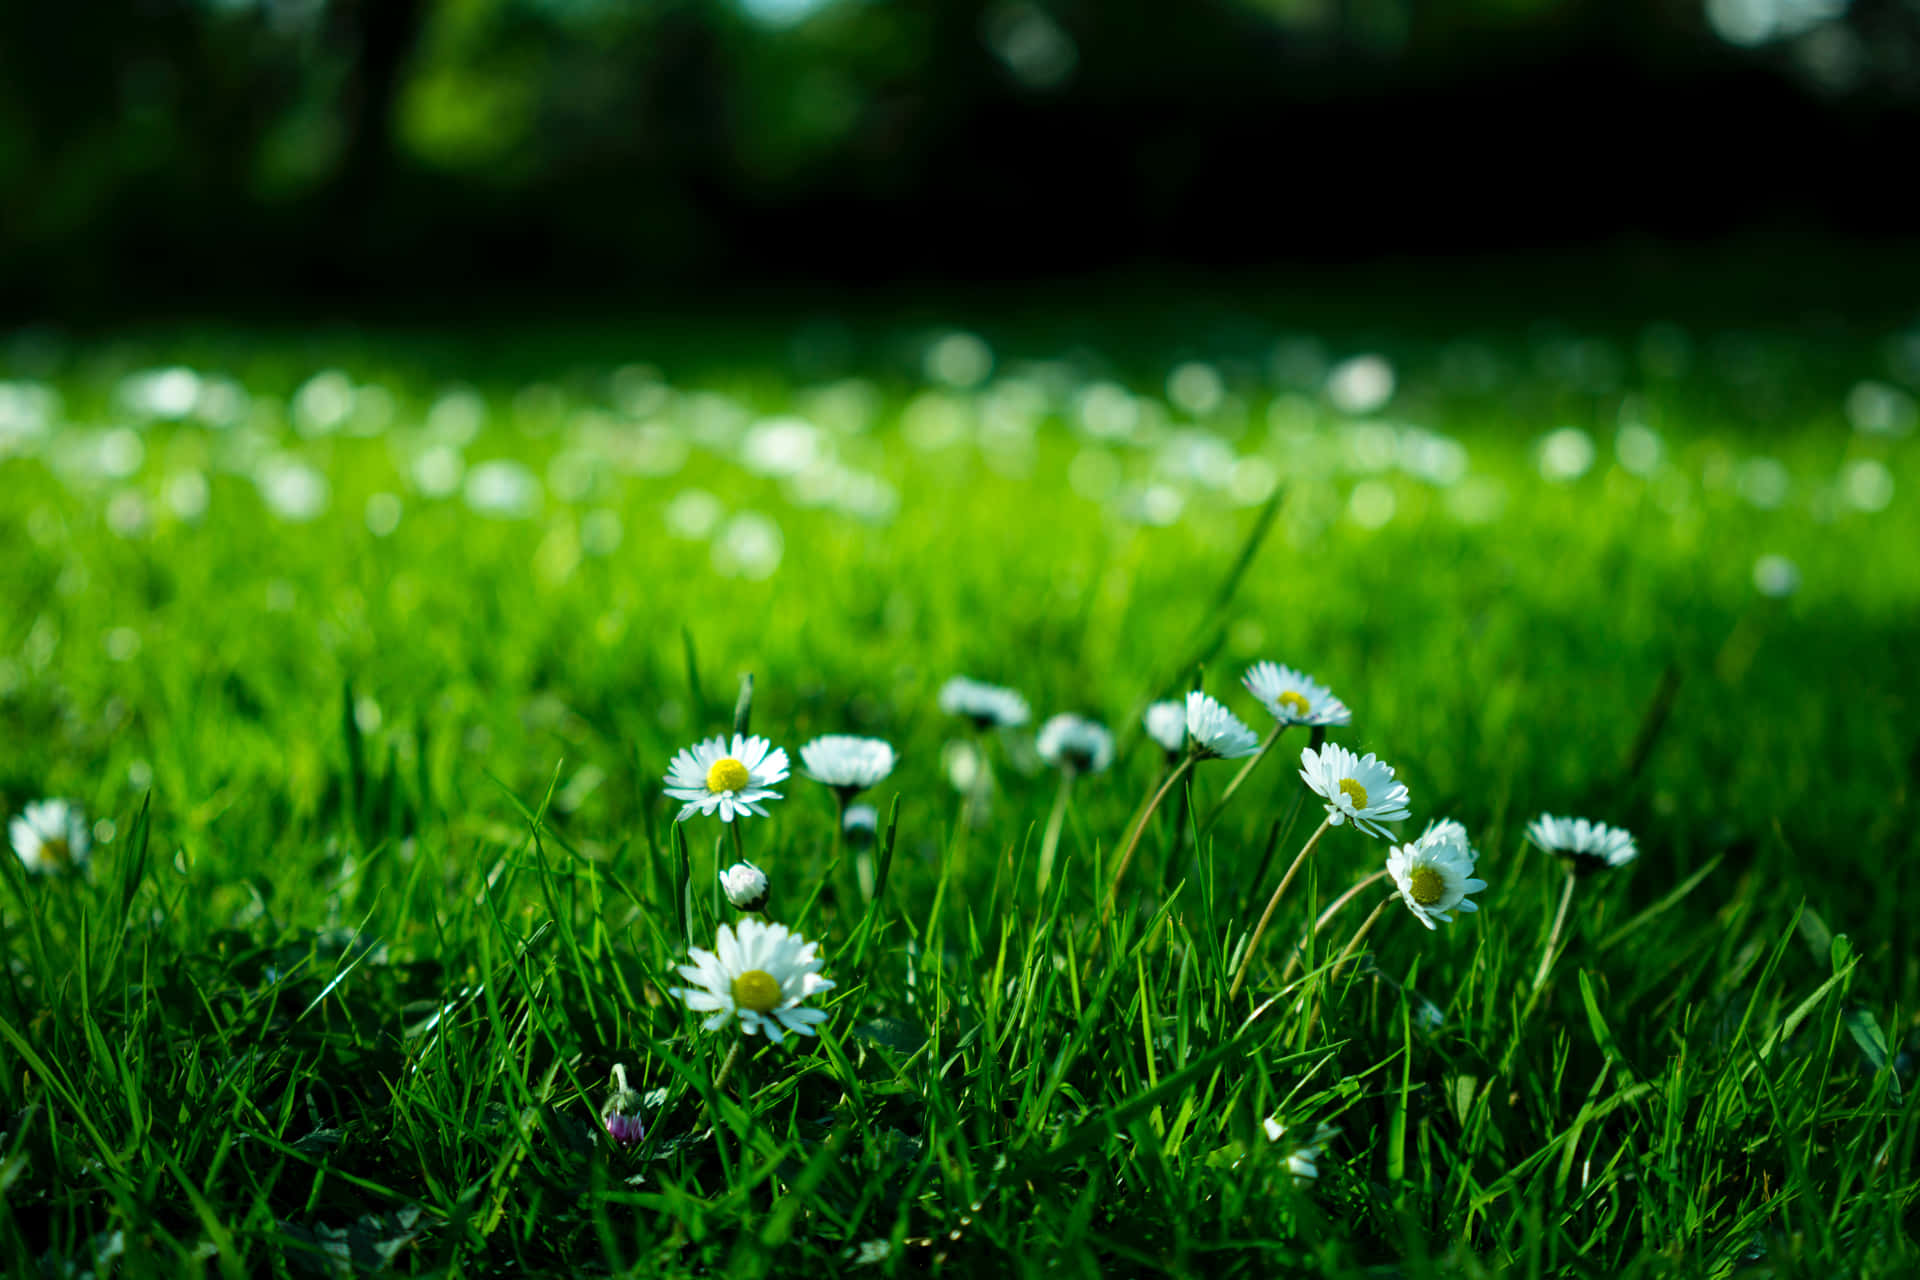 Daisies In The Grass, Grass, Daisies, Daisies, Daisies, Daisies, Daisies, Daisies Wallpaper